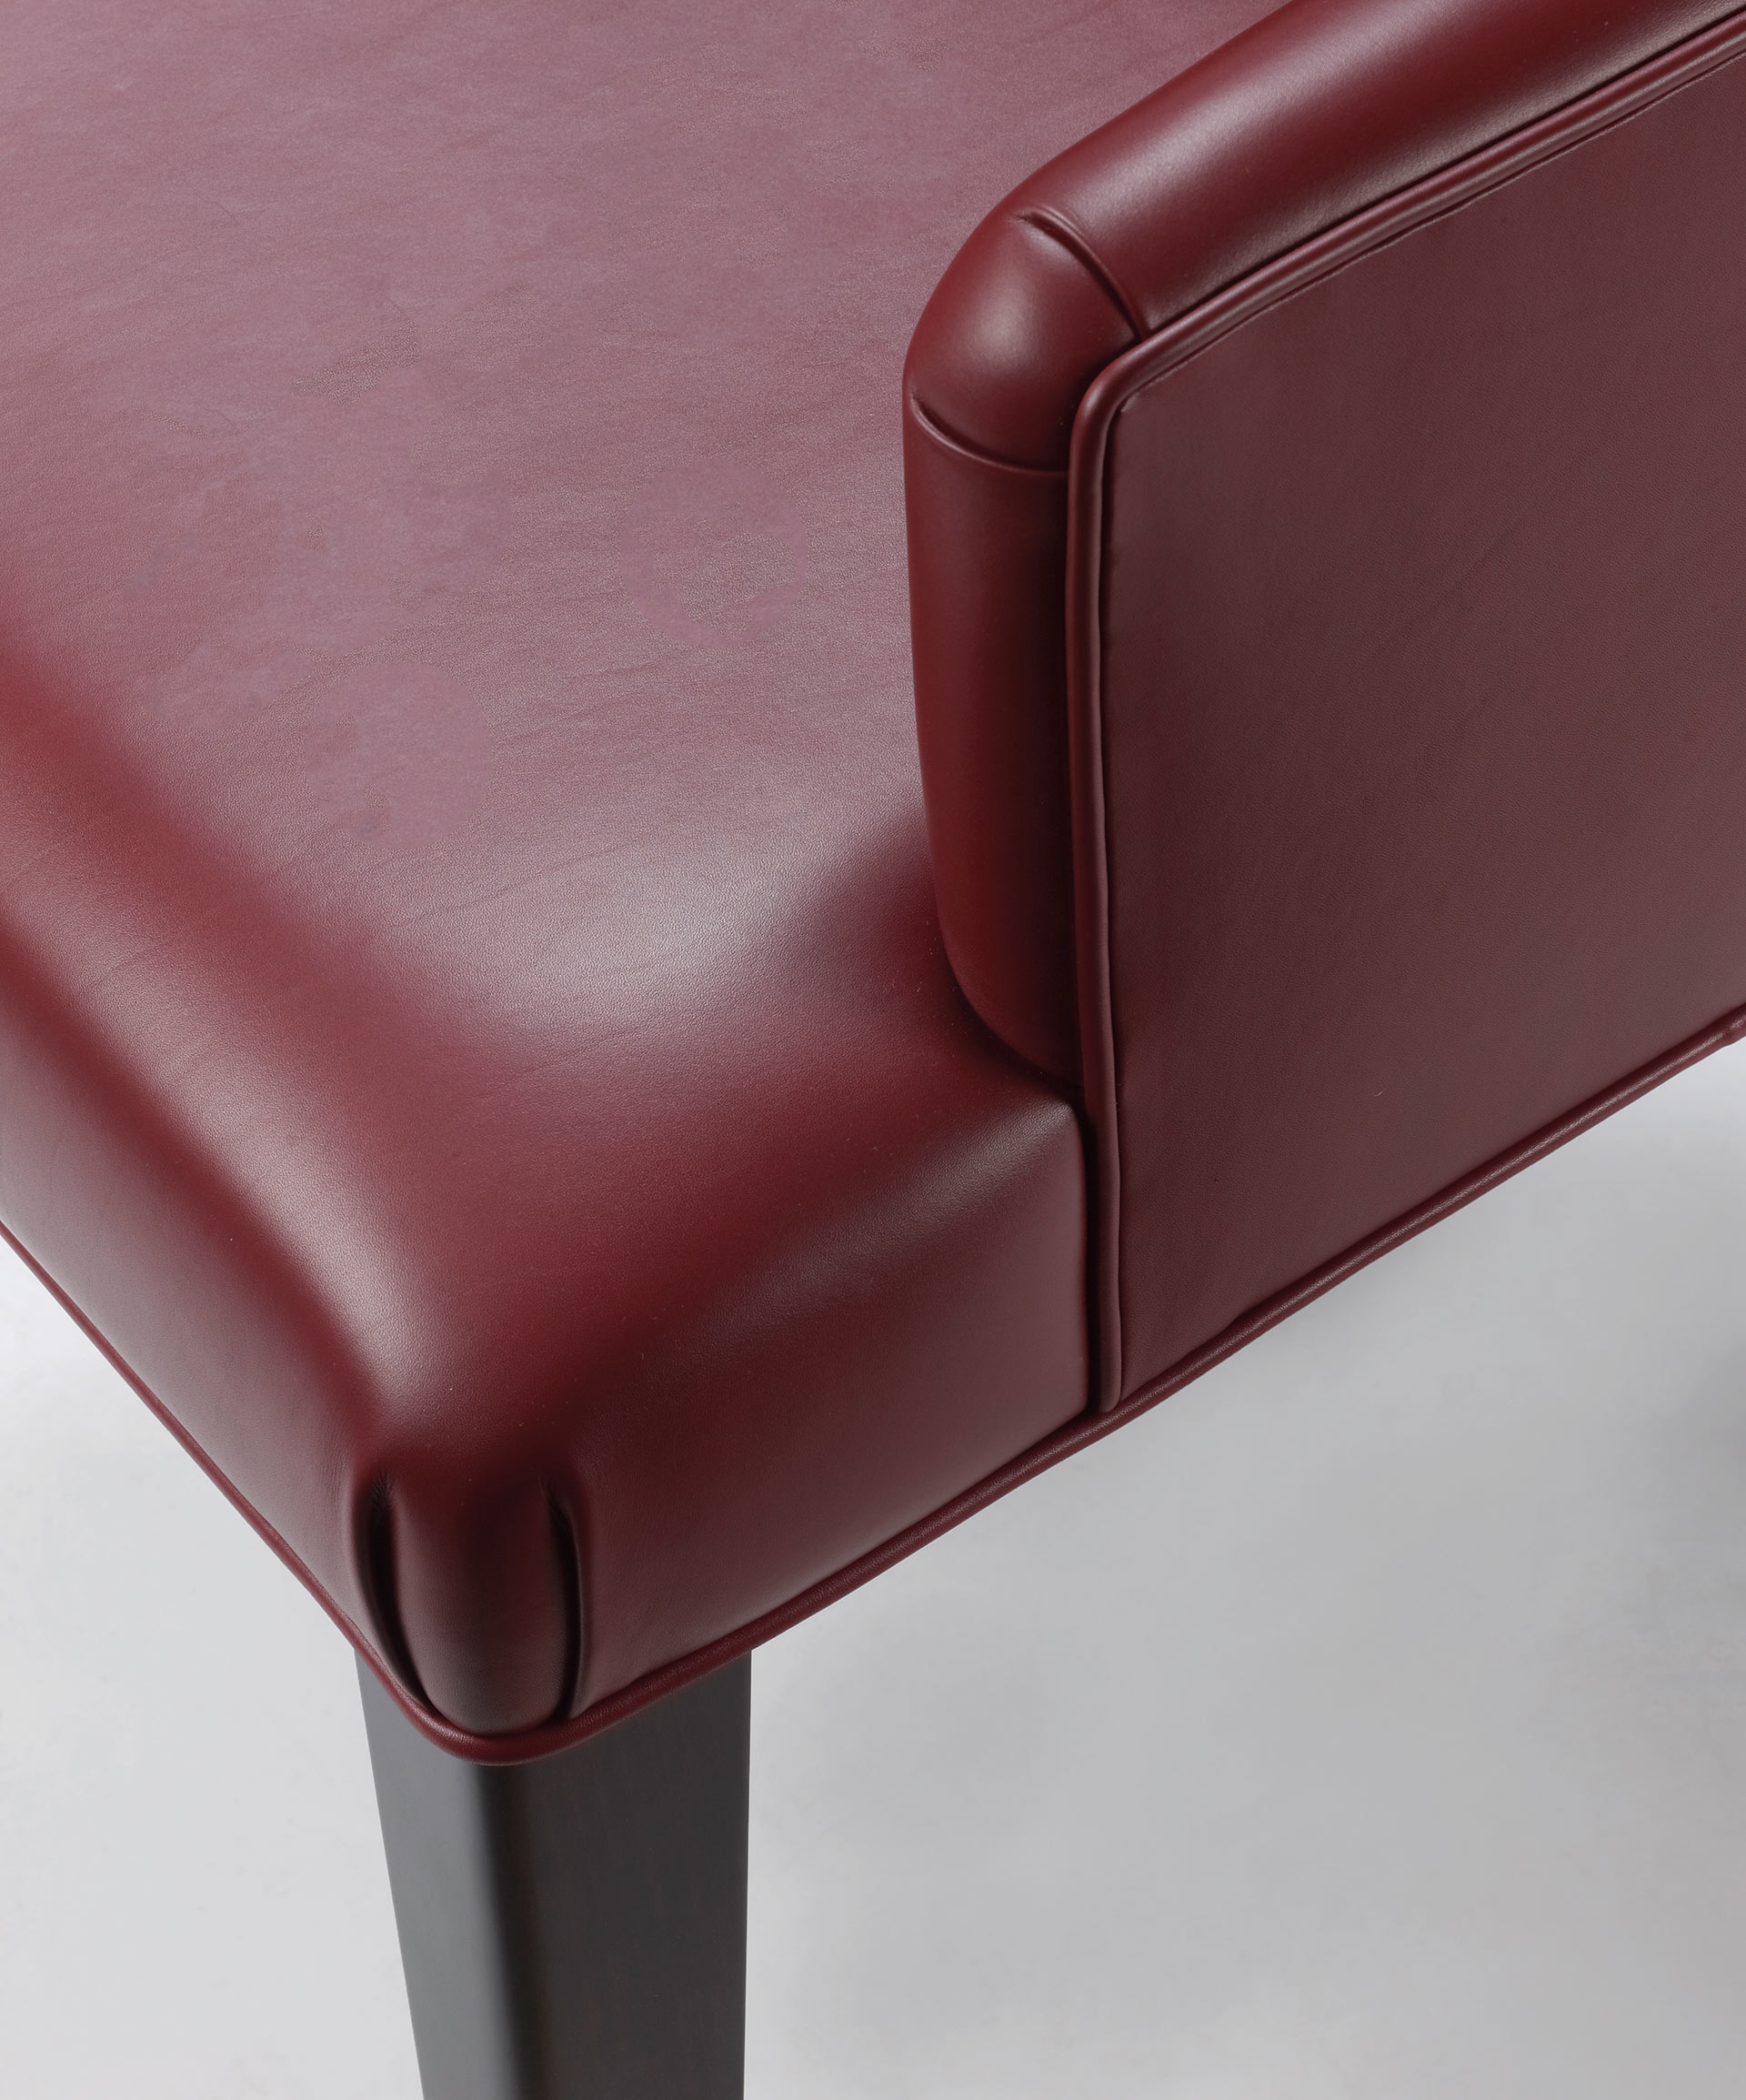 Isotta è una sedia da pranzo in legno con o senza braccioli e con shienale rivestito in tessuto o pelle, del catalogo di Promemoria | Promemoria